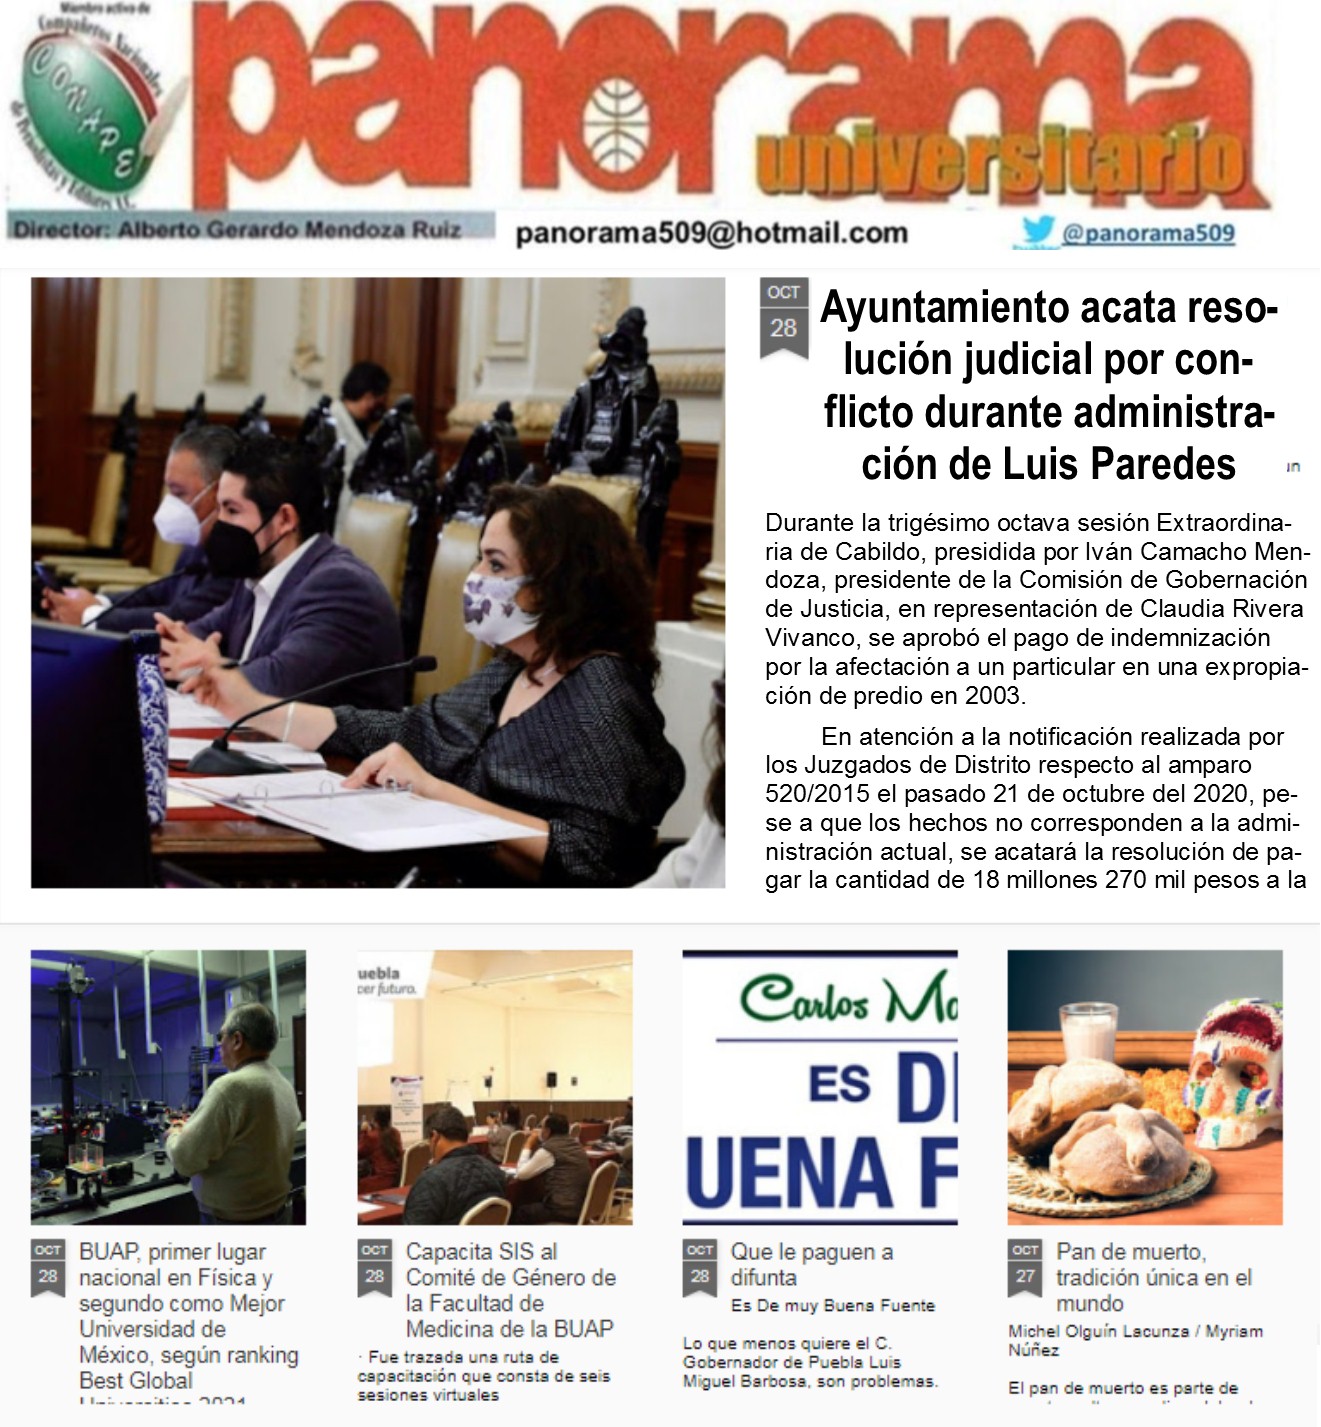 Ayuntamiento acata resolución judicial por conflicto durante la administración de Luis Paredes